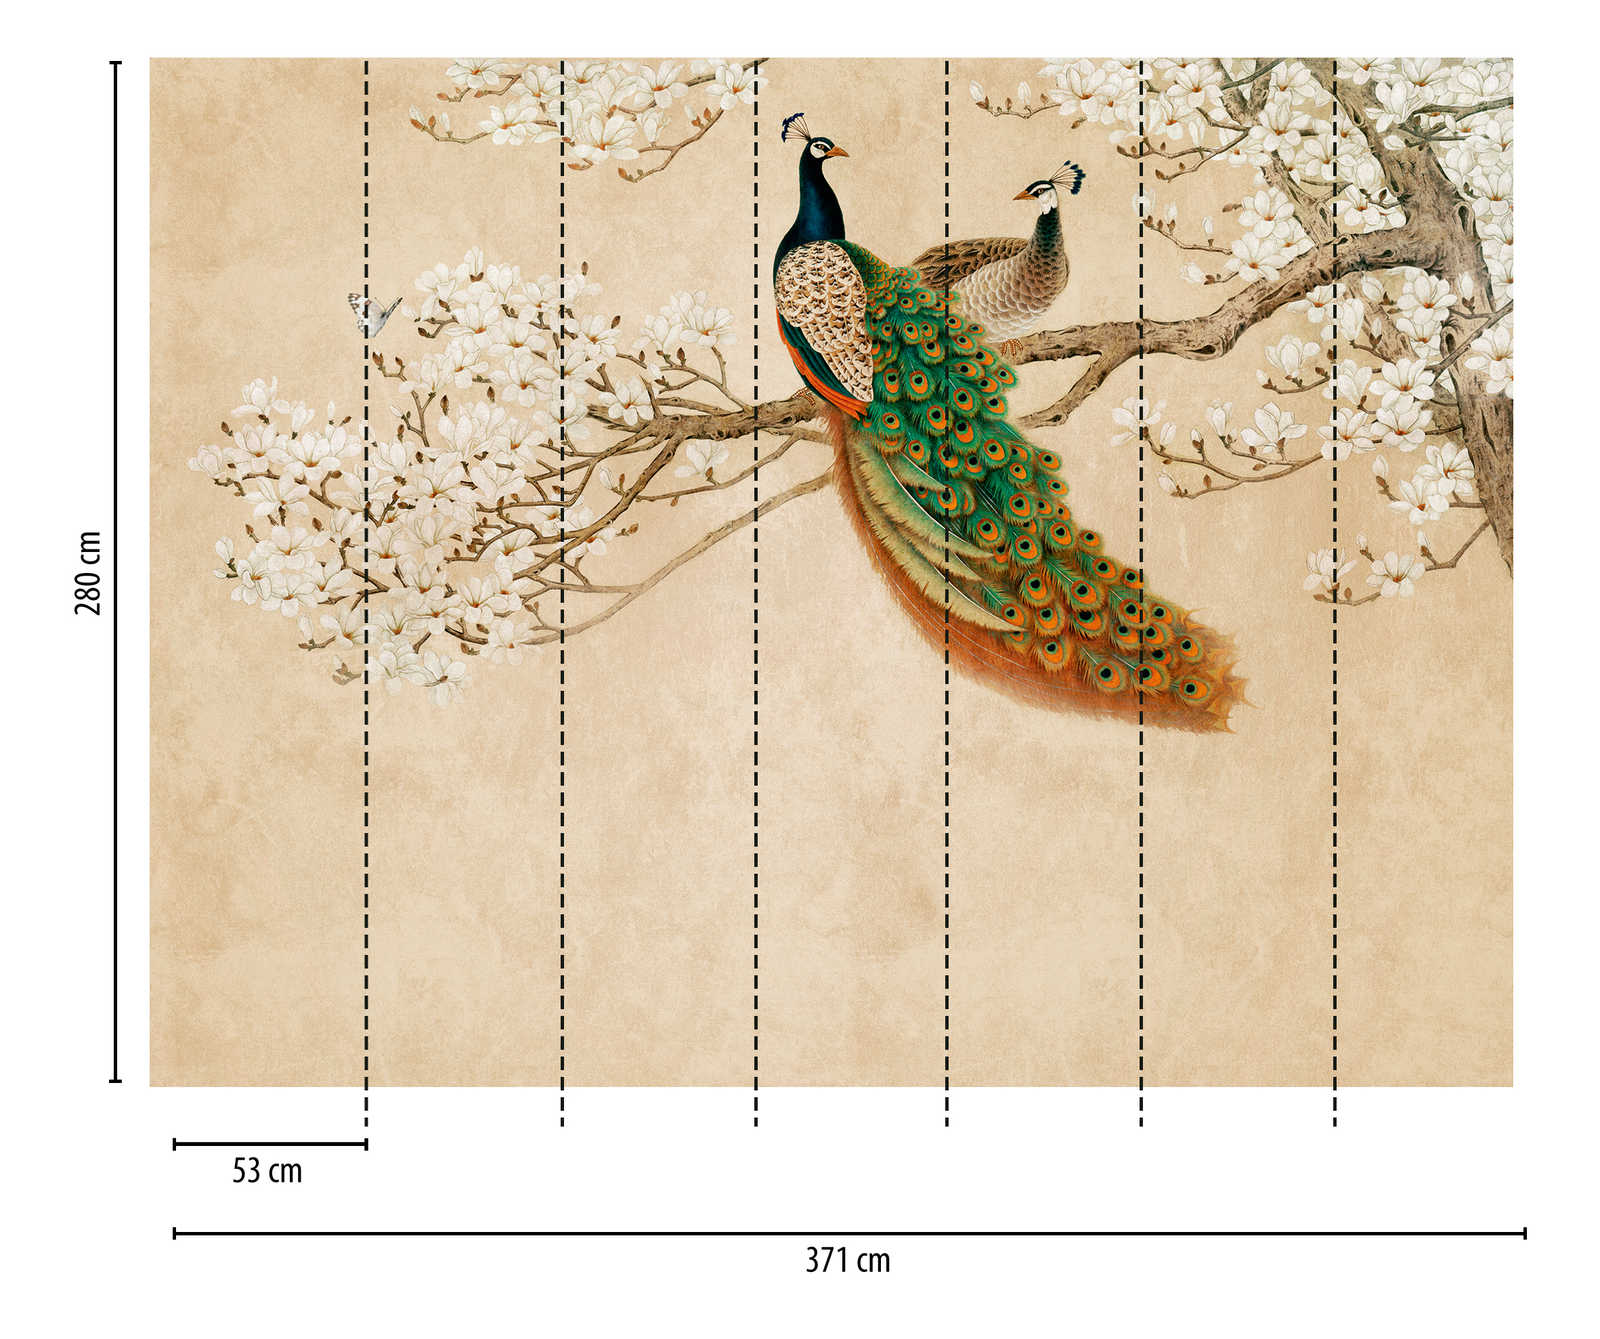             Papeles pintados novedad - papel pintado con motivo de flor de cerezo y pavo real en estilo asiático
        